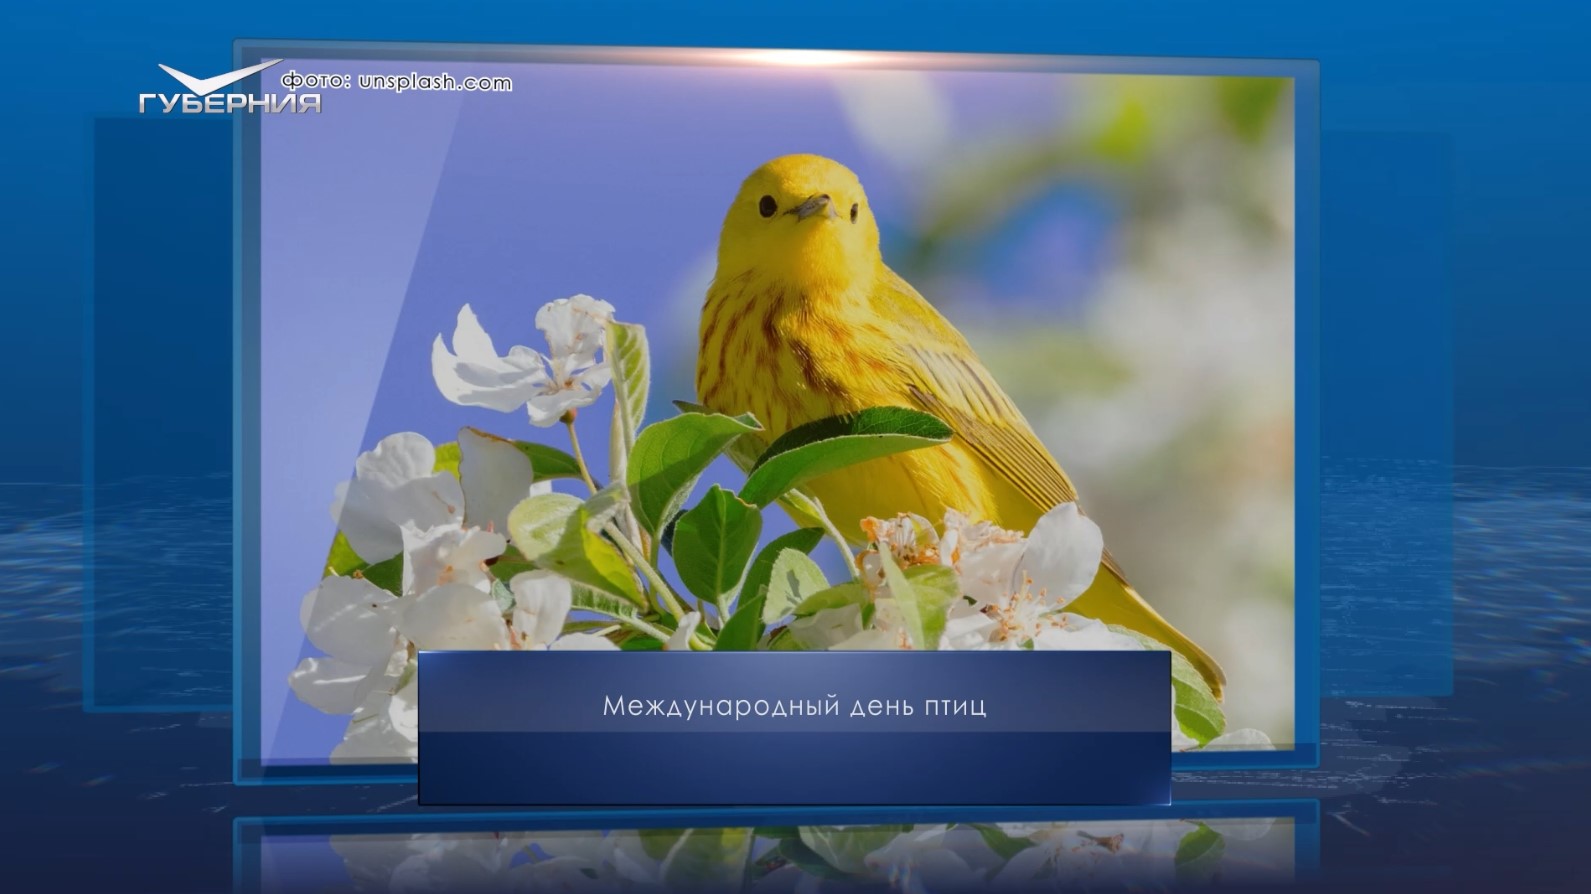 Международный день птиц. Календарь Губернии от 1 апреля